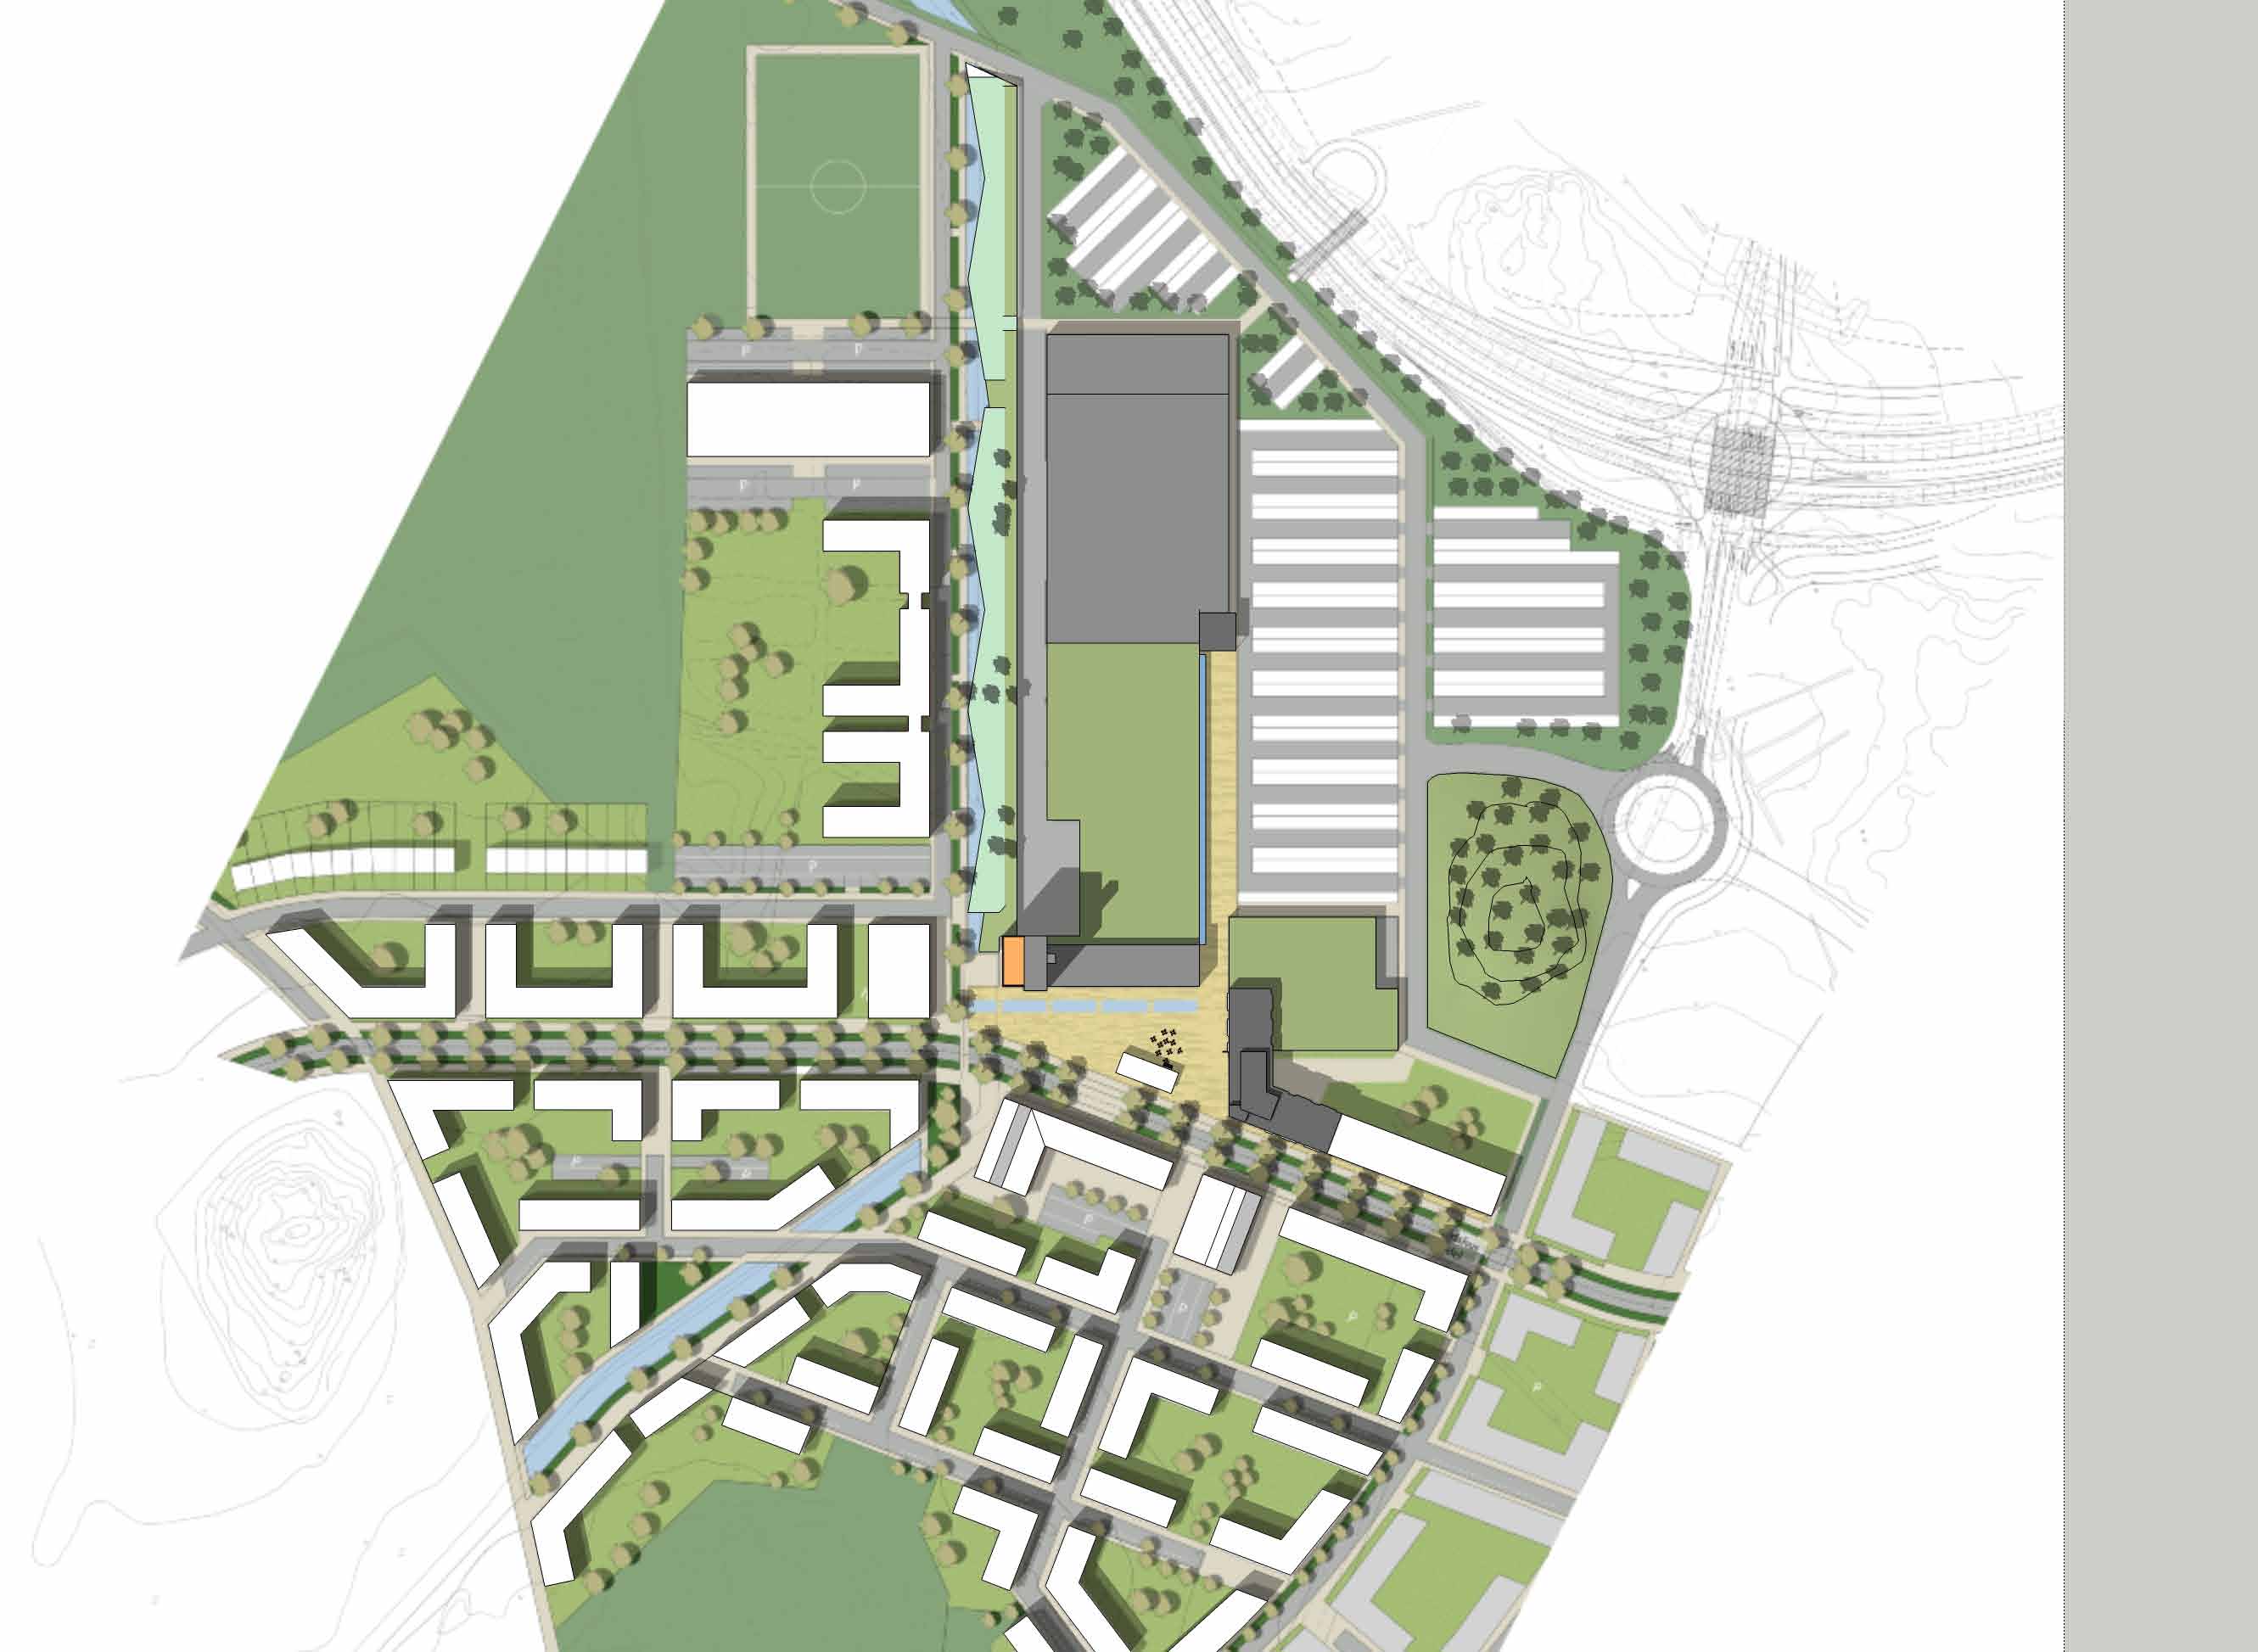 st ANGÖRINGSGATA PARKERING 260 st INFART Vårt förslag till utformning av Djurgården Centrum tar utgångspunkt från tidigare ställningstaganden, som bl.a. hållbart samhällsbyggande och hög arkitekturnivå.